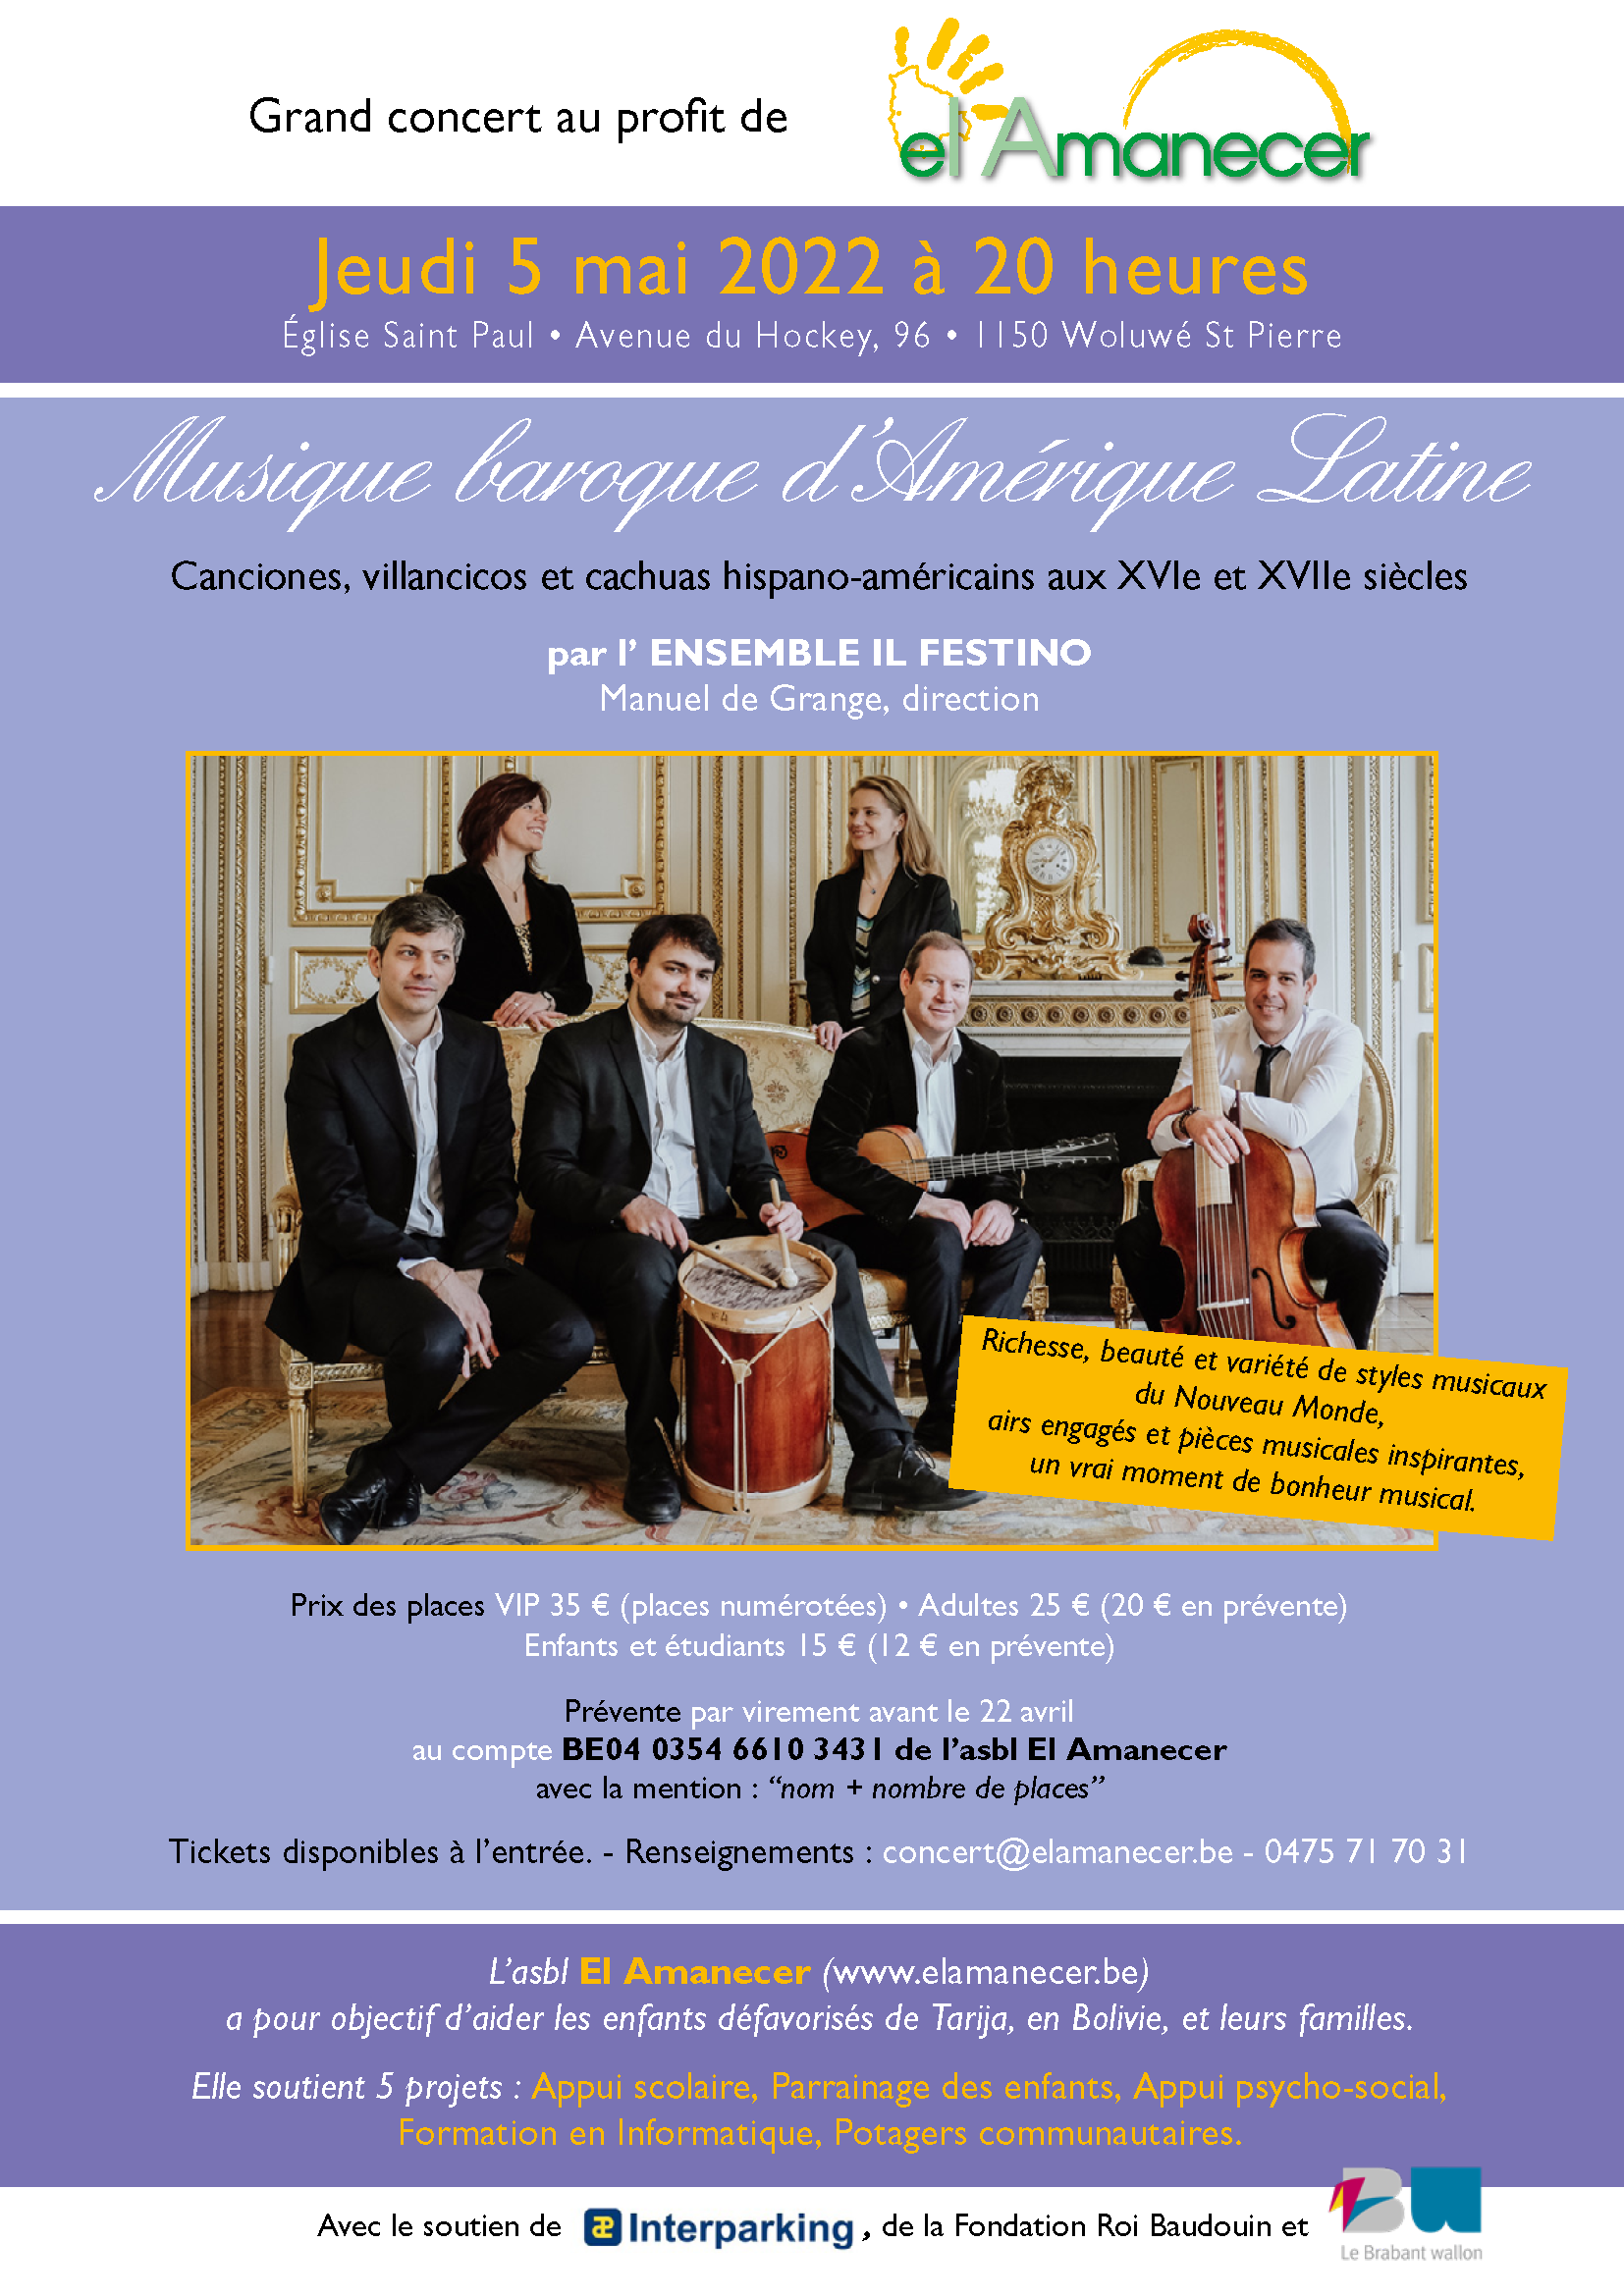 musique baroque d'amérique Latine ensemble Il Festino